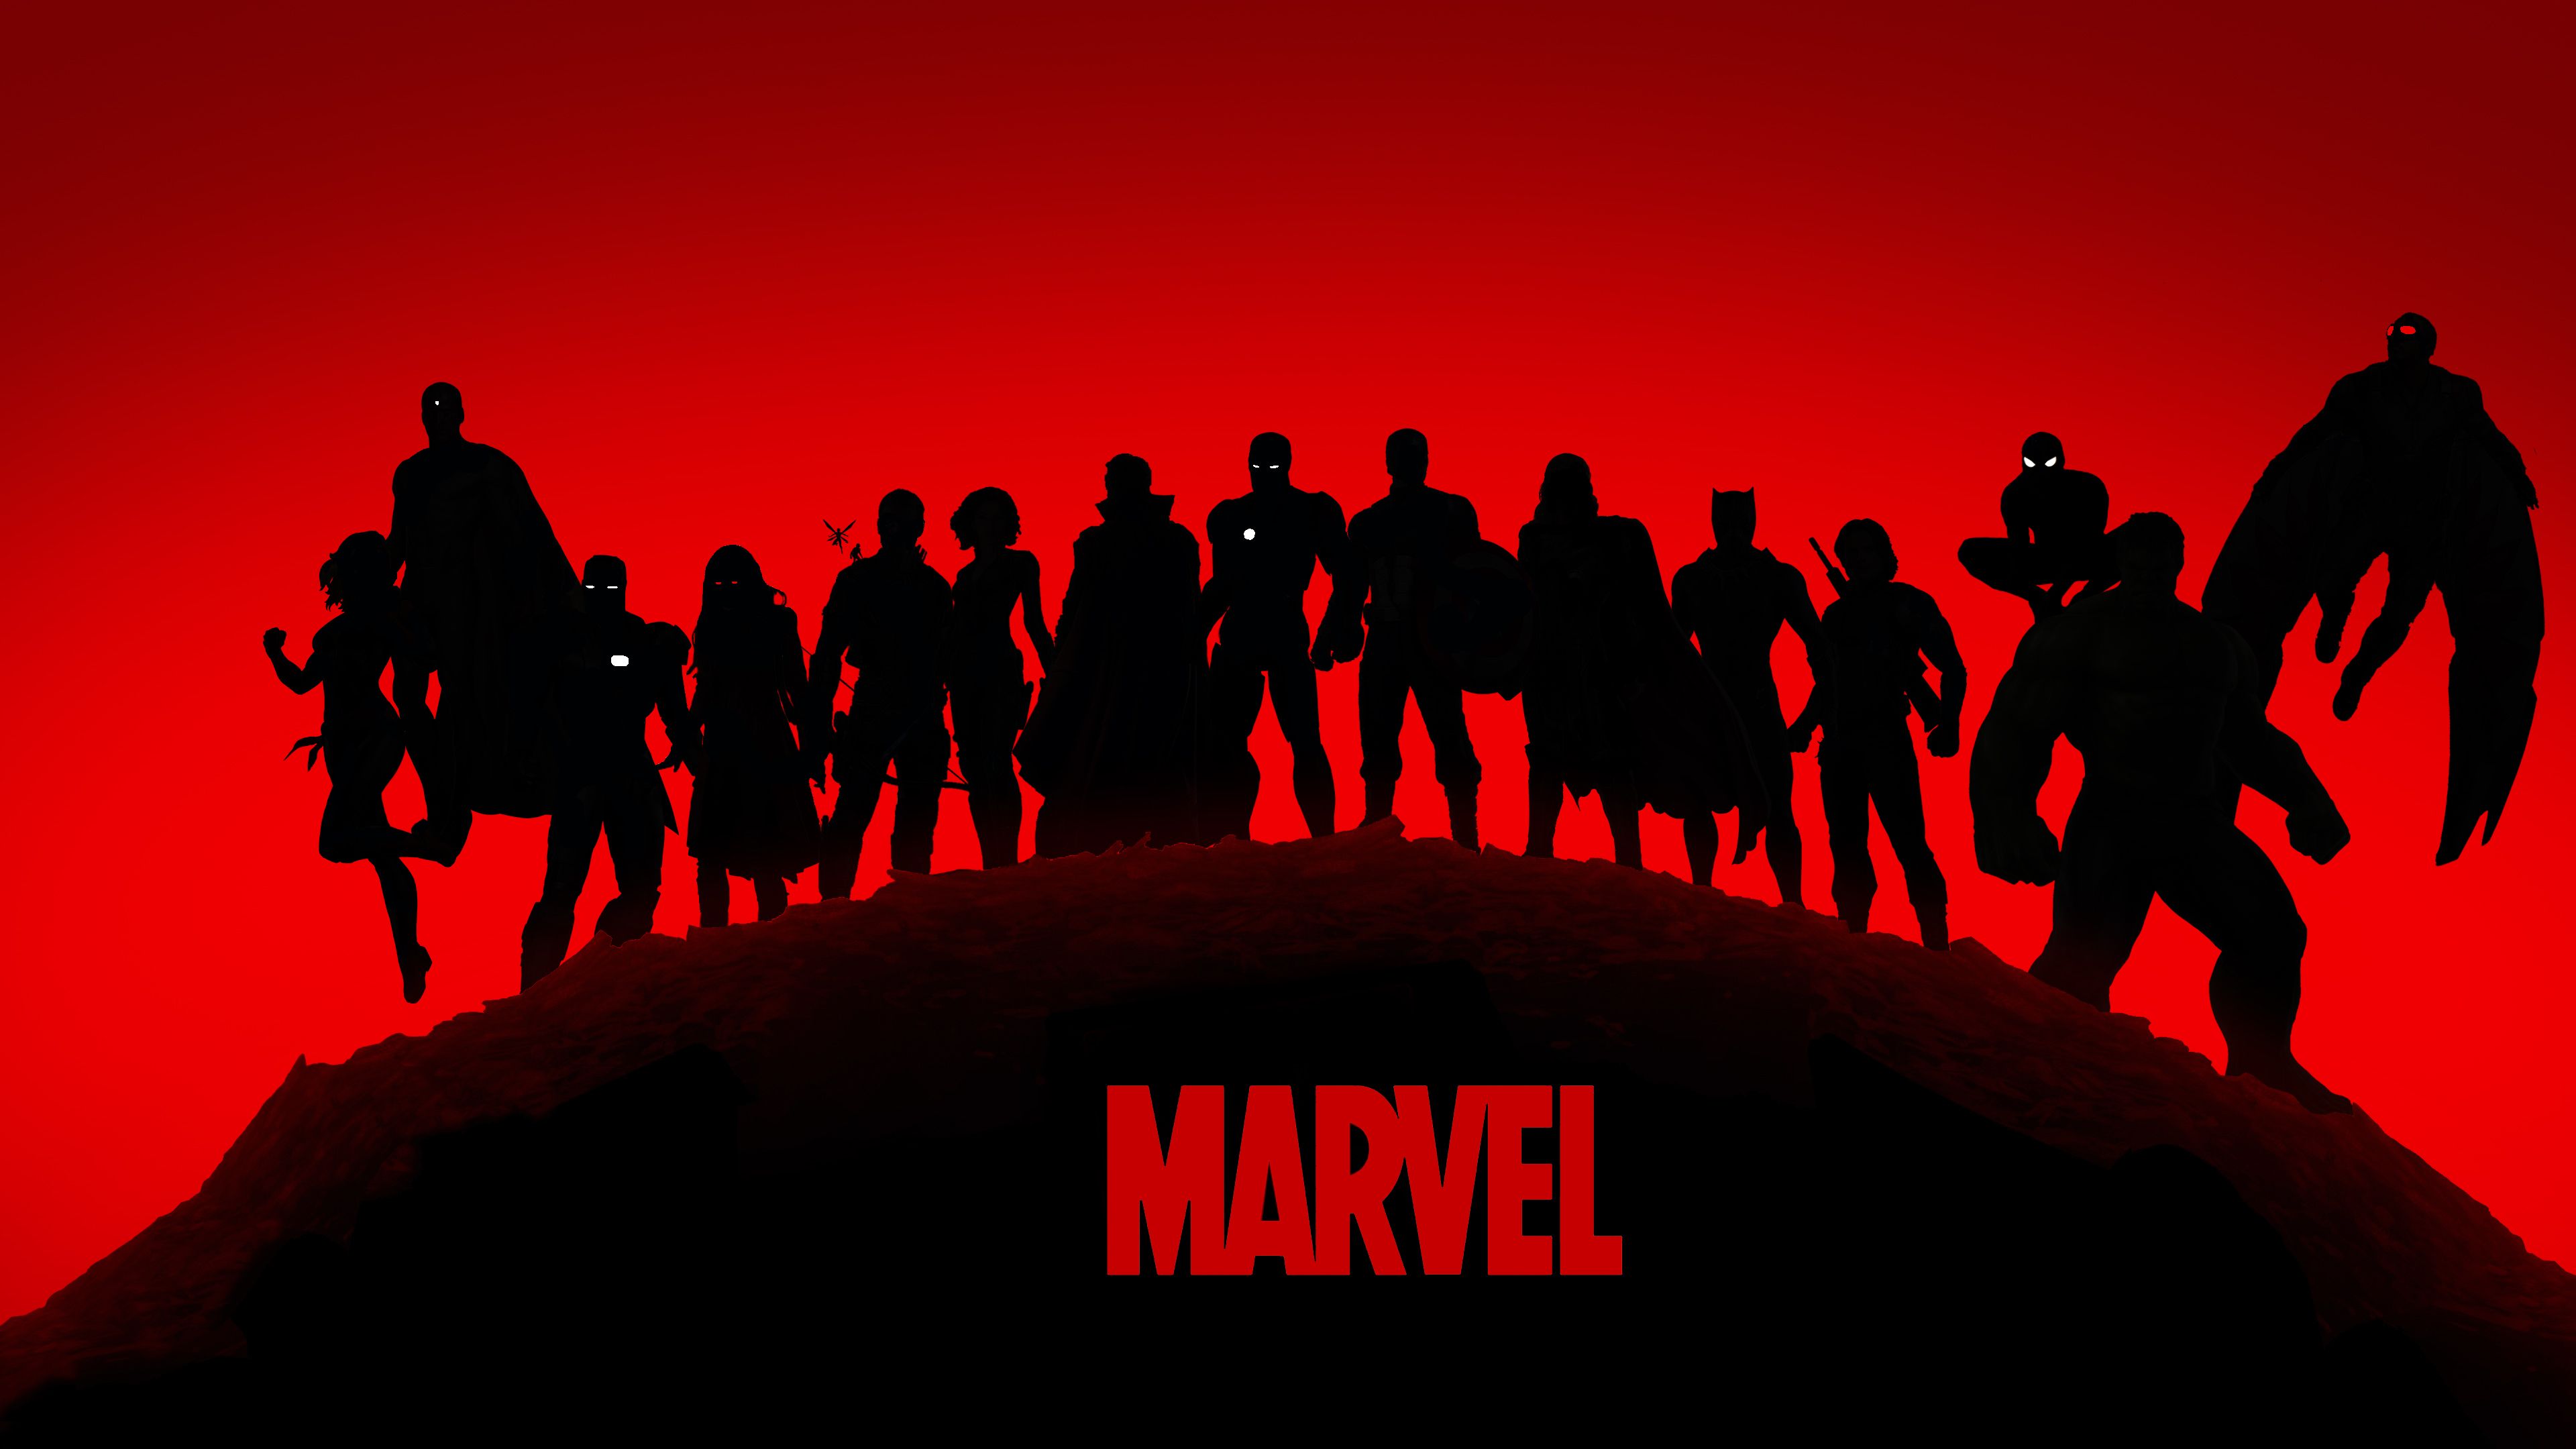 The Avengers (Liên Minh Công Lý Marvel): Các fan của siêu anh hùng Marvel sẽ không bỏ qua cơ hội để có được những ảnh nền đẹp nhất của The Avengers trên điện thoại của họ. Hãy thu hút người xung quanh bạn với các bức ảnh nền sáng trên màn hình điện thoại của bạn.